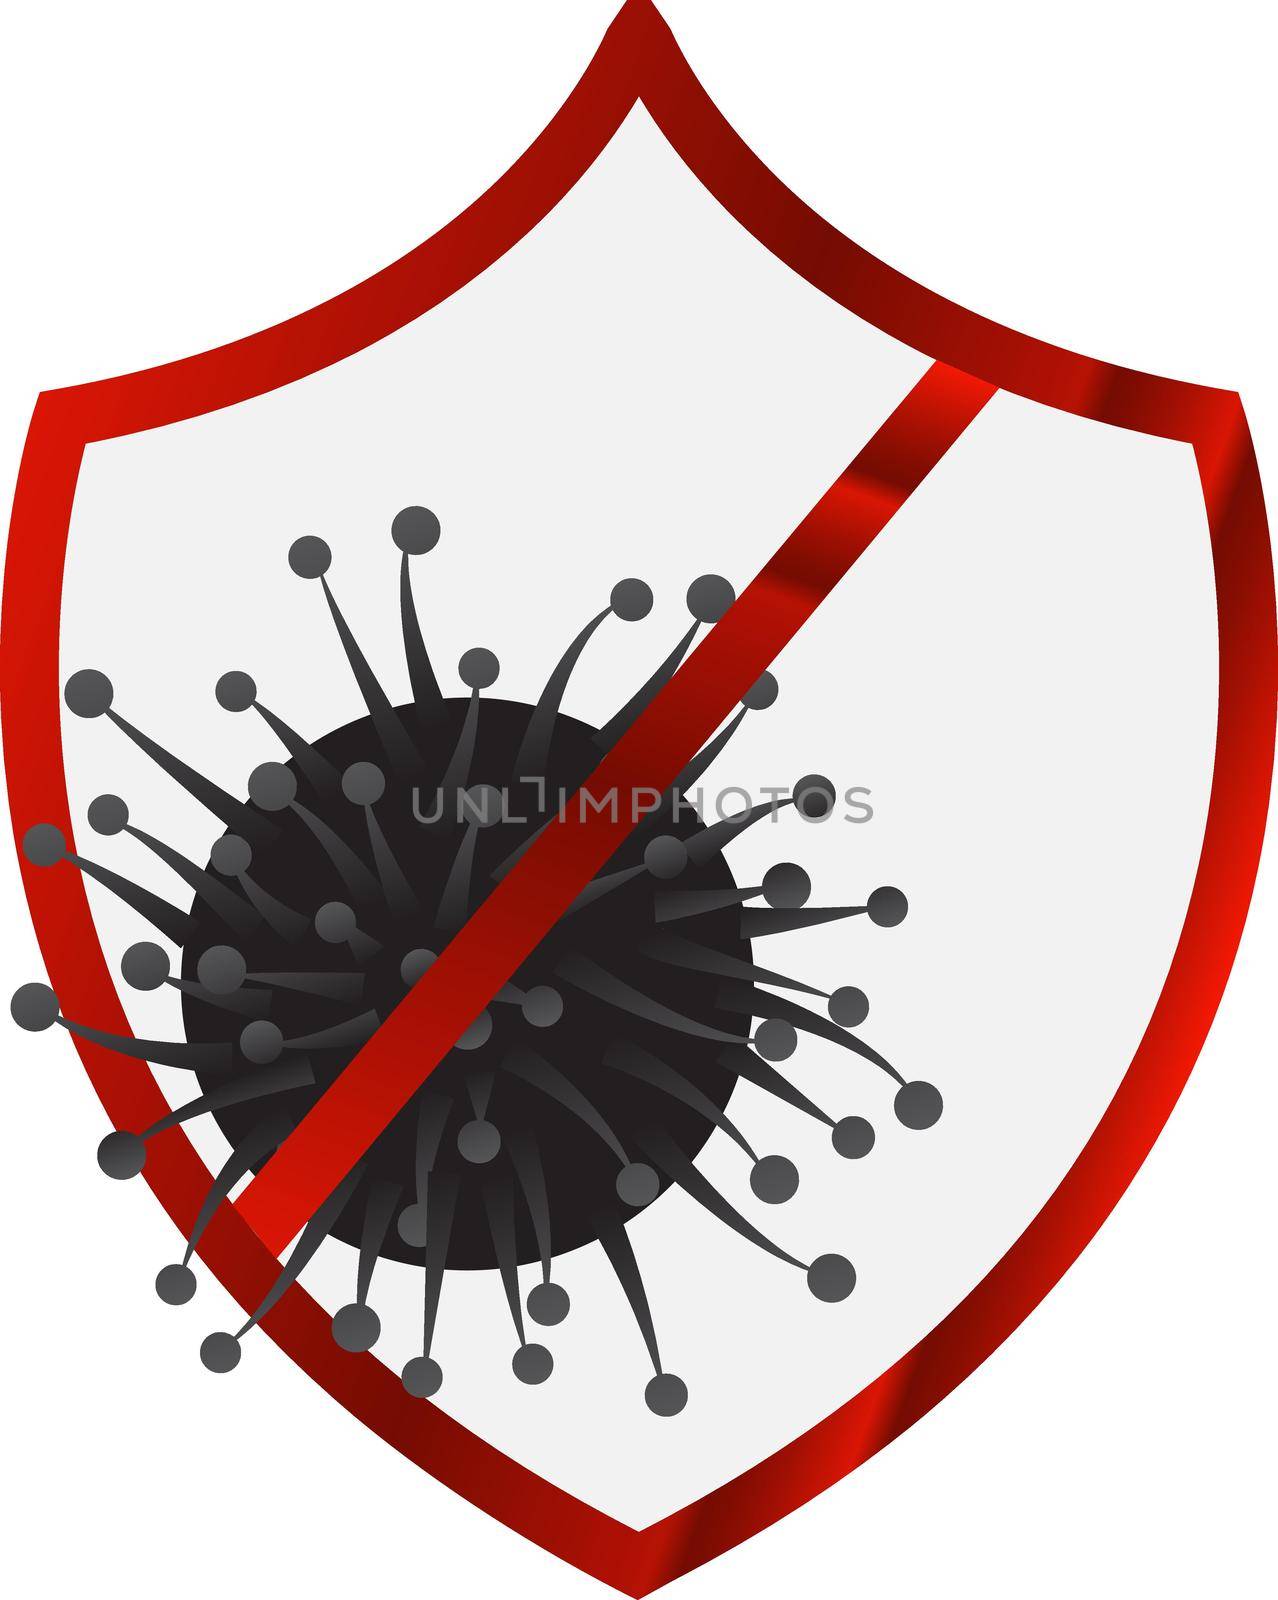 Antivirus shield sign vector illustration by Olena758